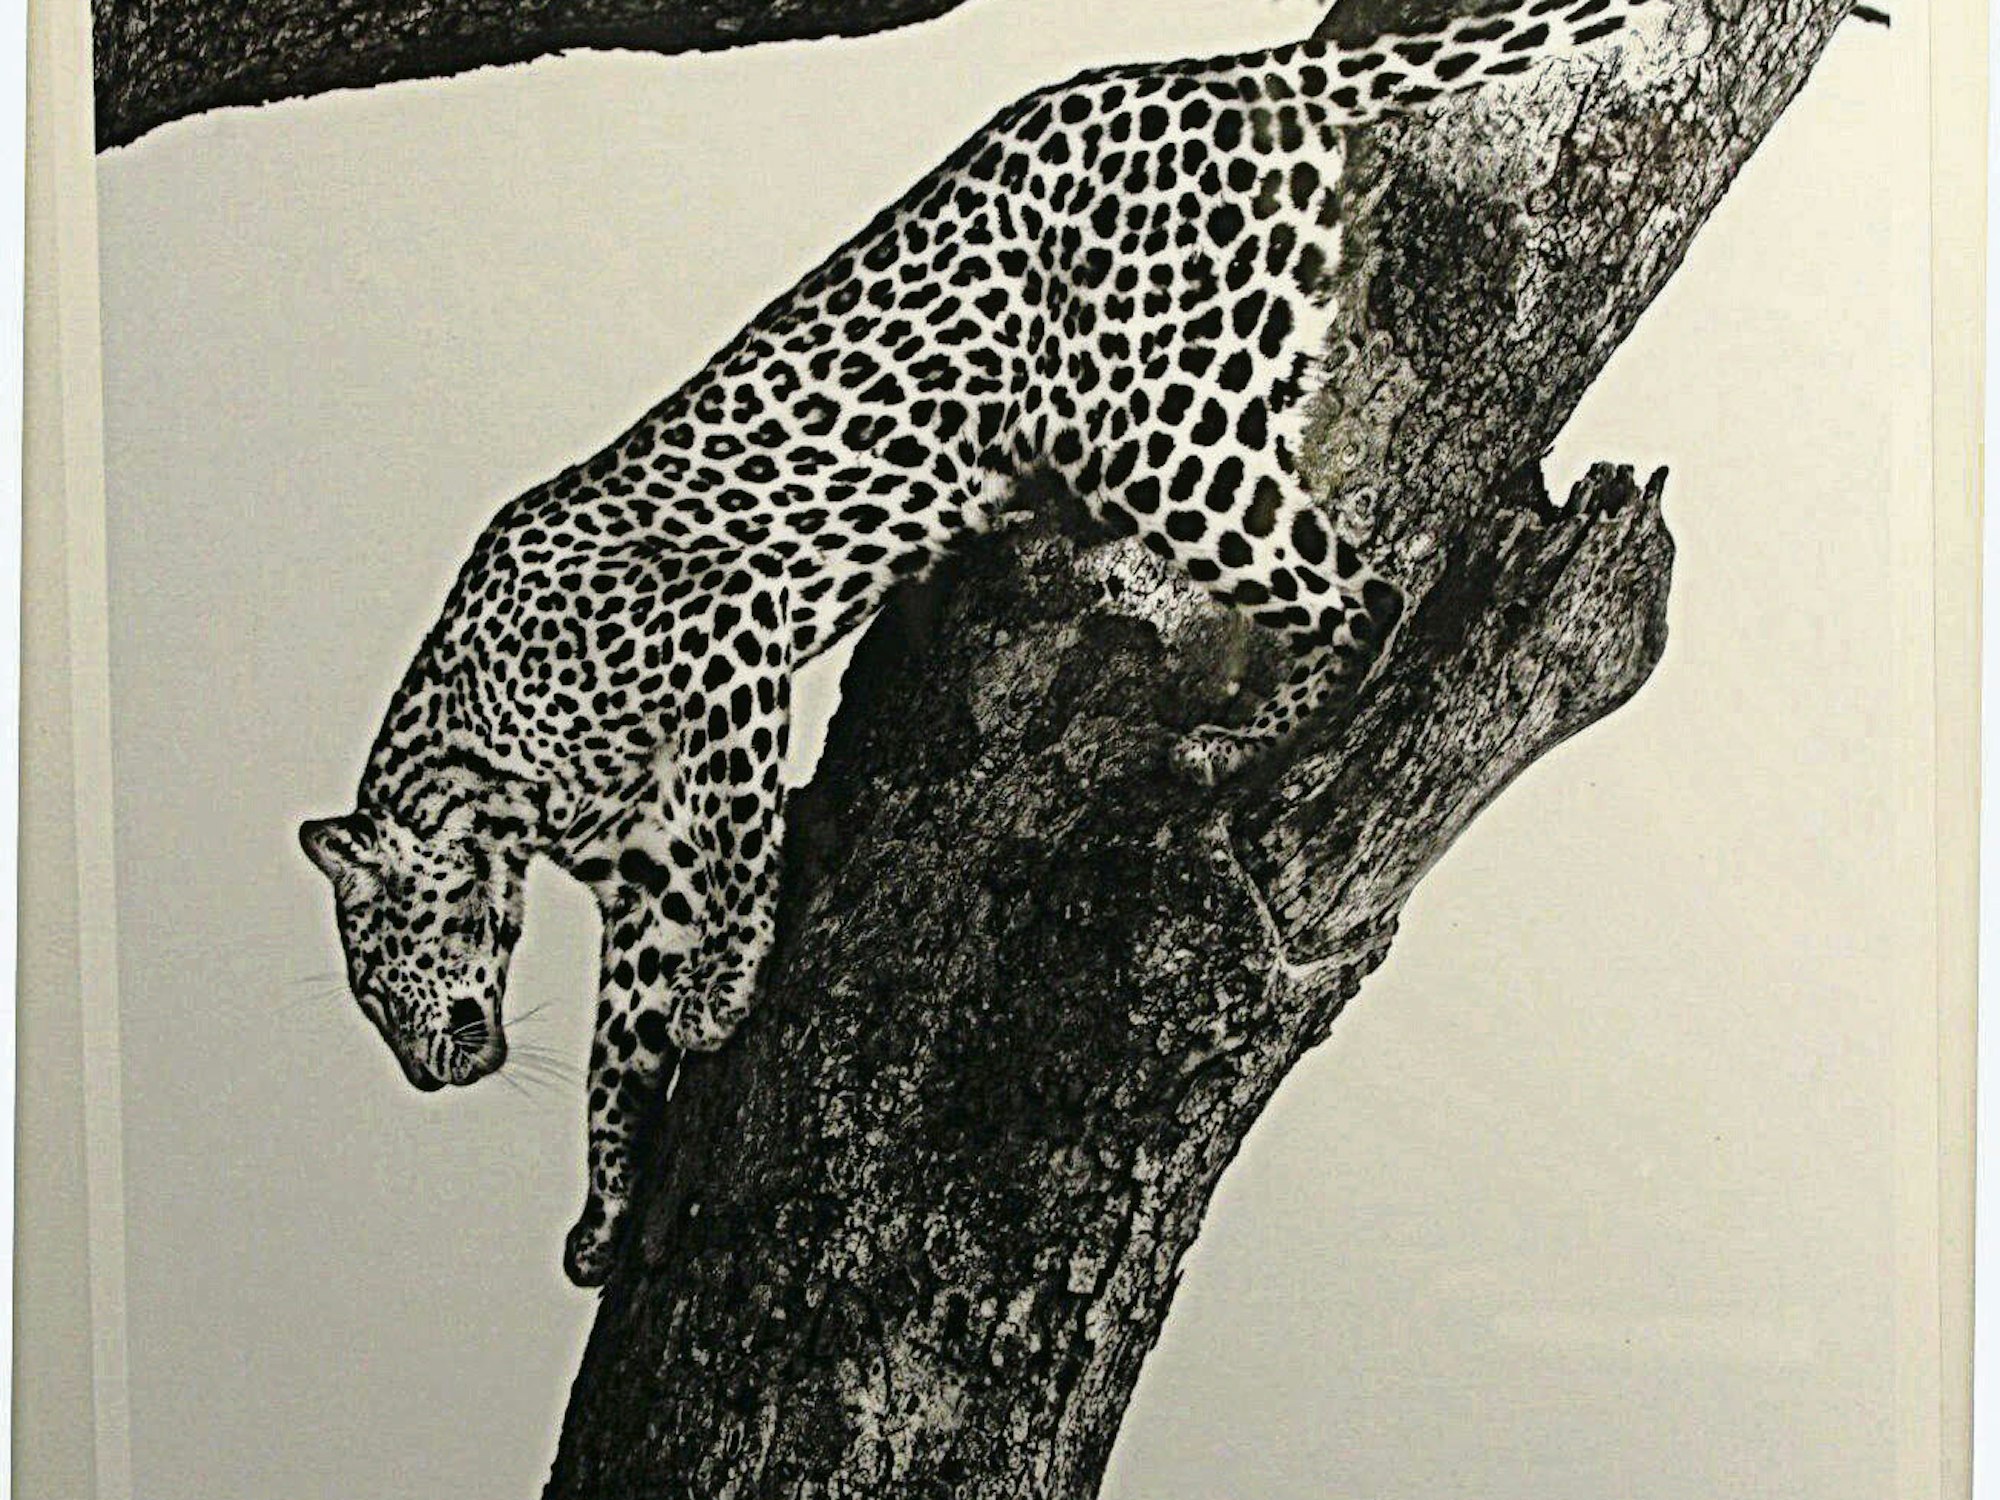 Ein Werk von Mauro Toro (Bild oben), Galeristin Gretta Hinojosa bei ihrer Eröffnungsrede (unten l.), ein Großkatzen-Bild von Hugo Troffaes (r.)